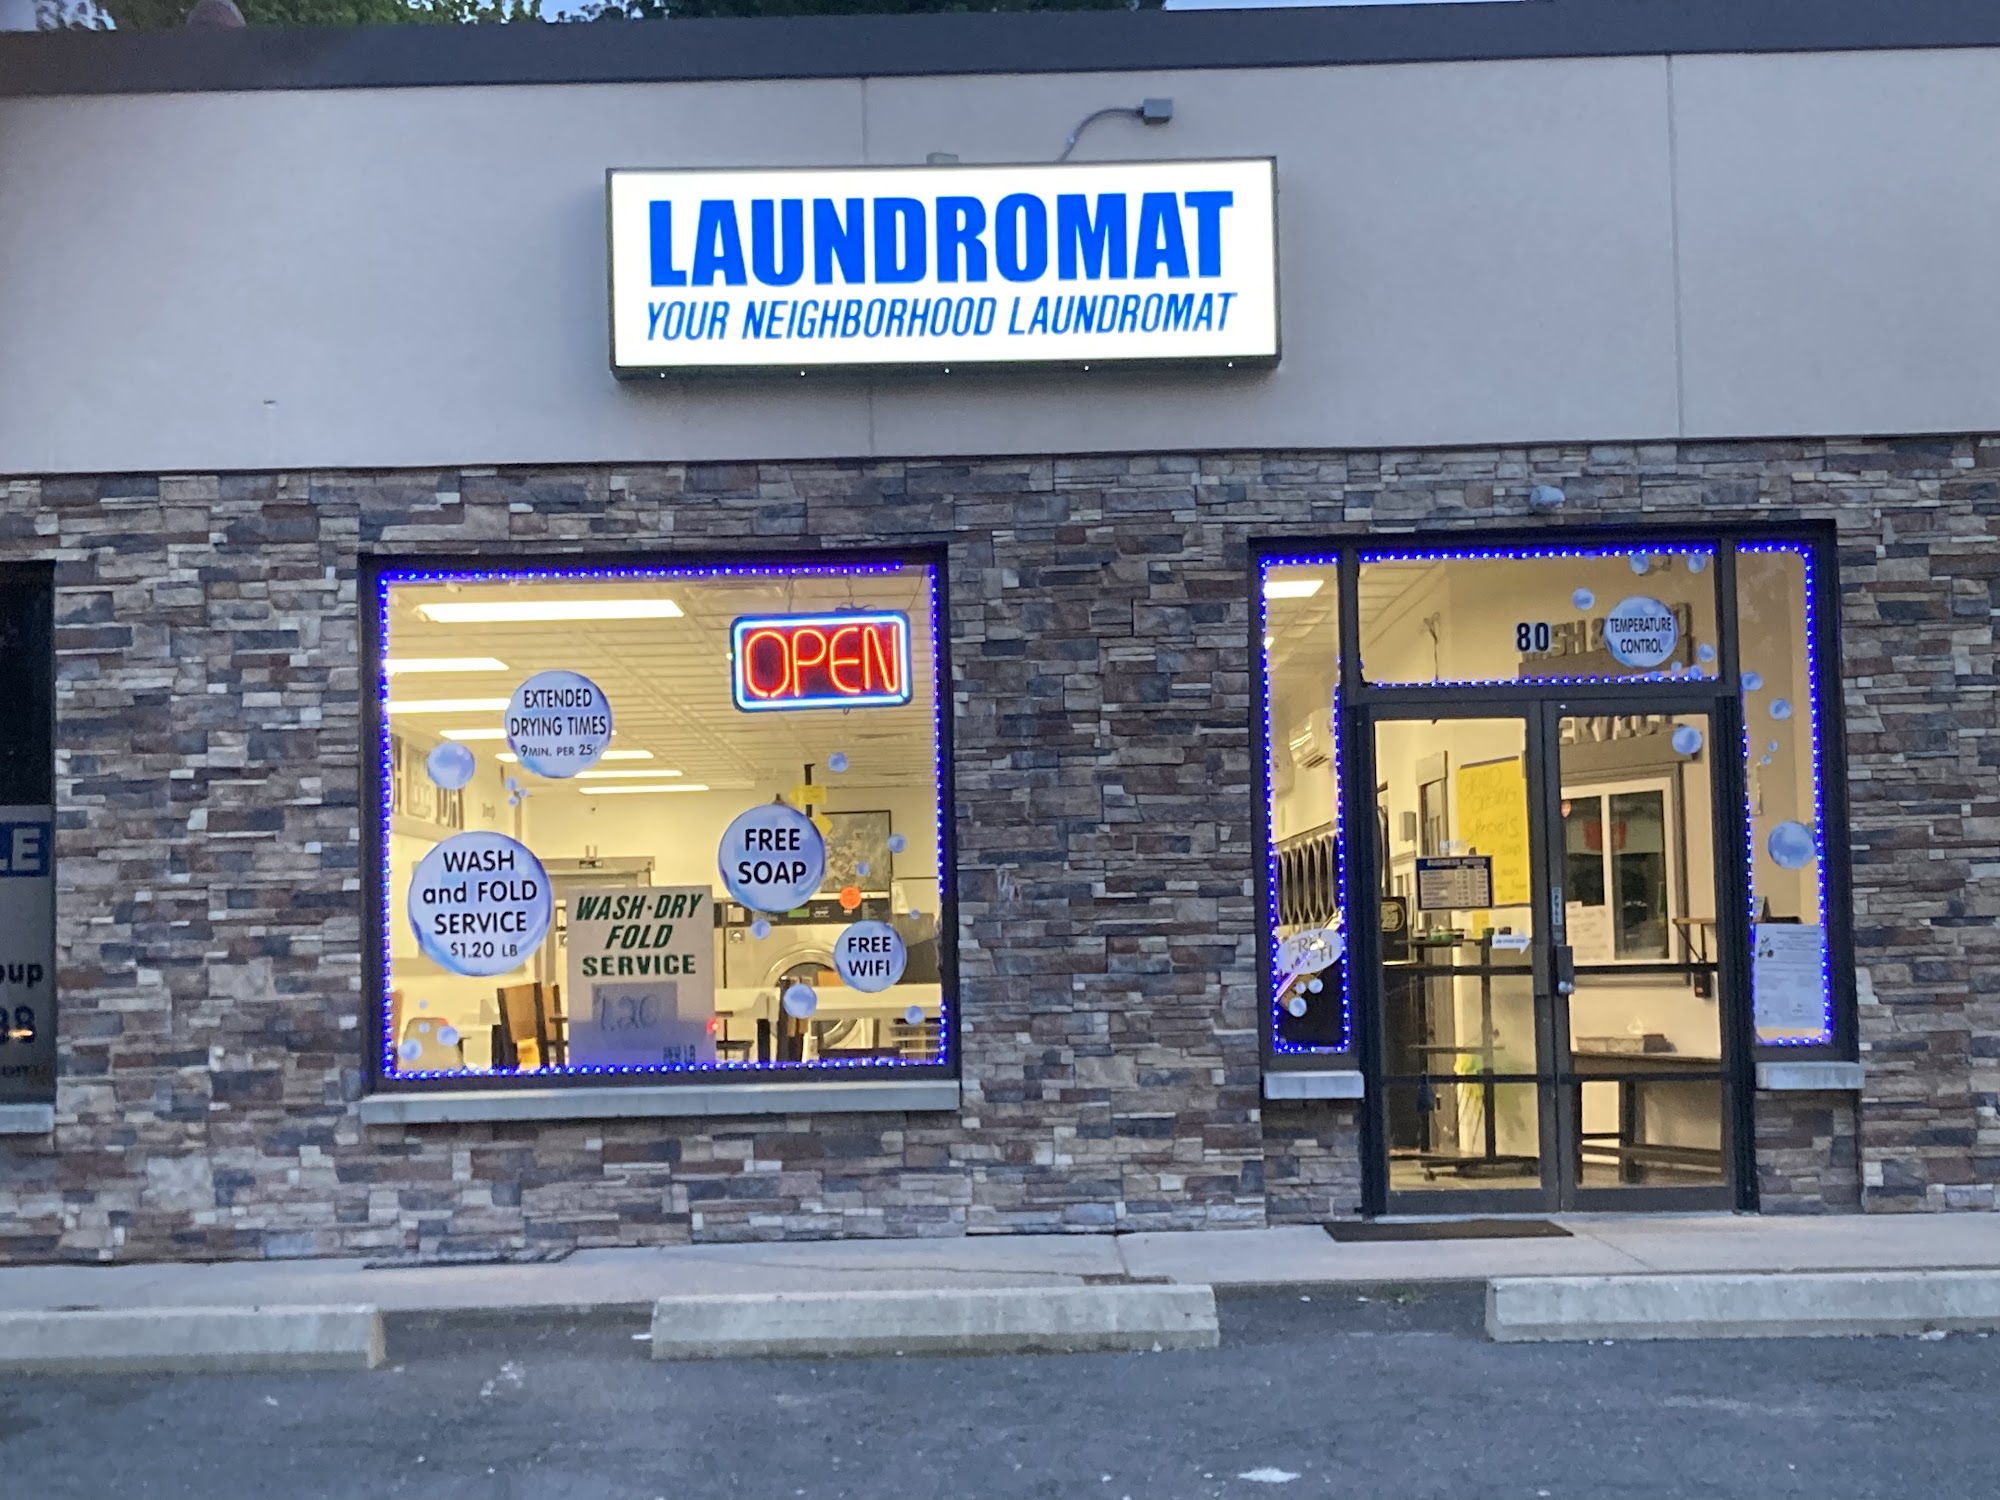 Your Neighborhood Laundromat